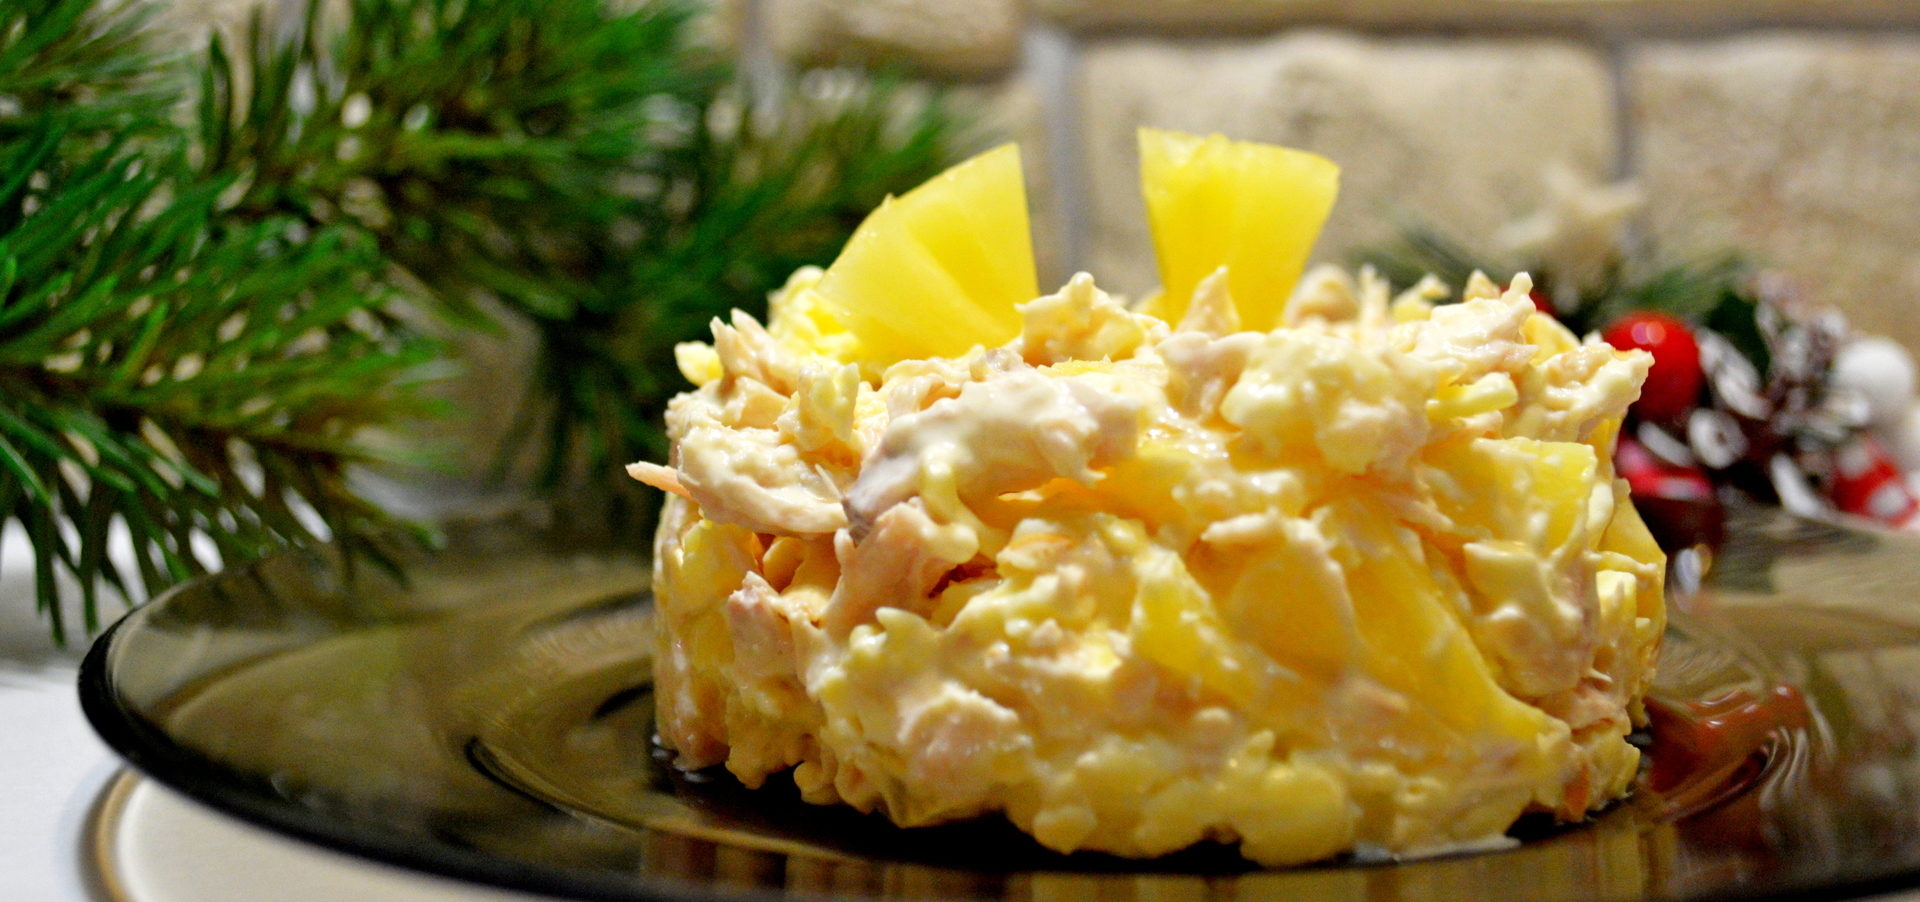 Салат с ананасом и курицей рецепт пошагово классический фото пошагово